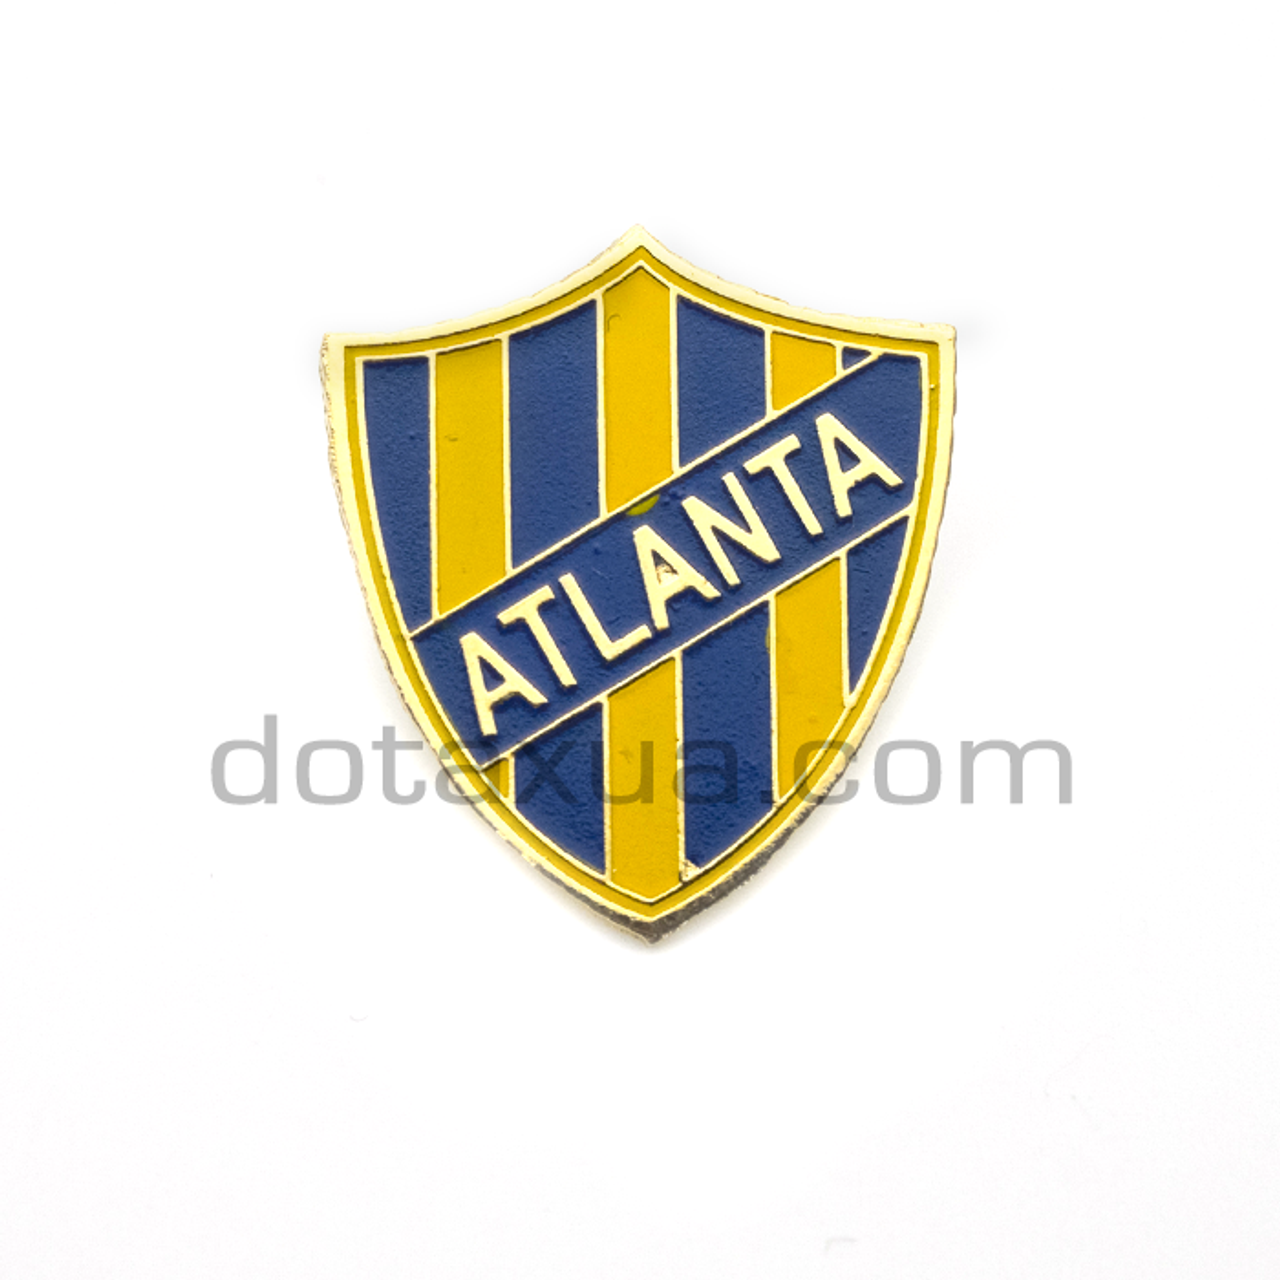 EN - Club Atlético Atlanta